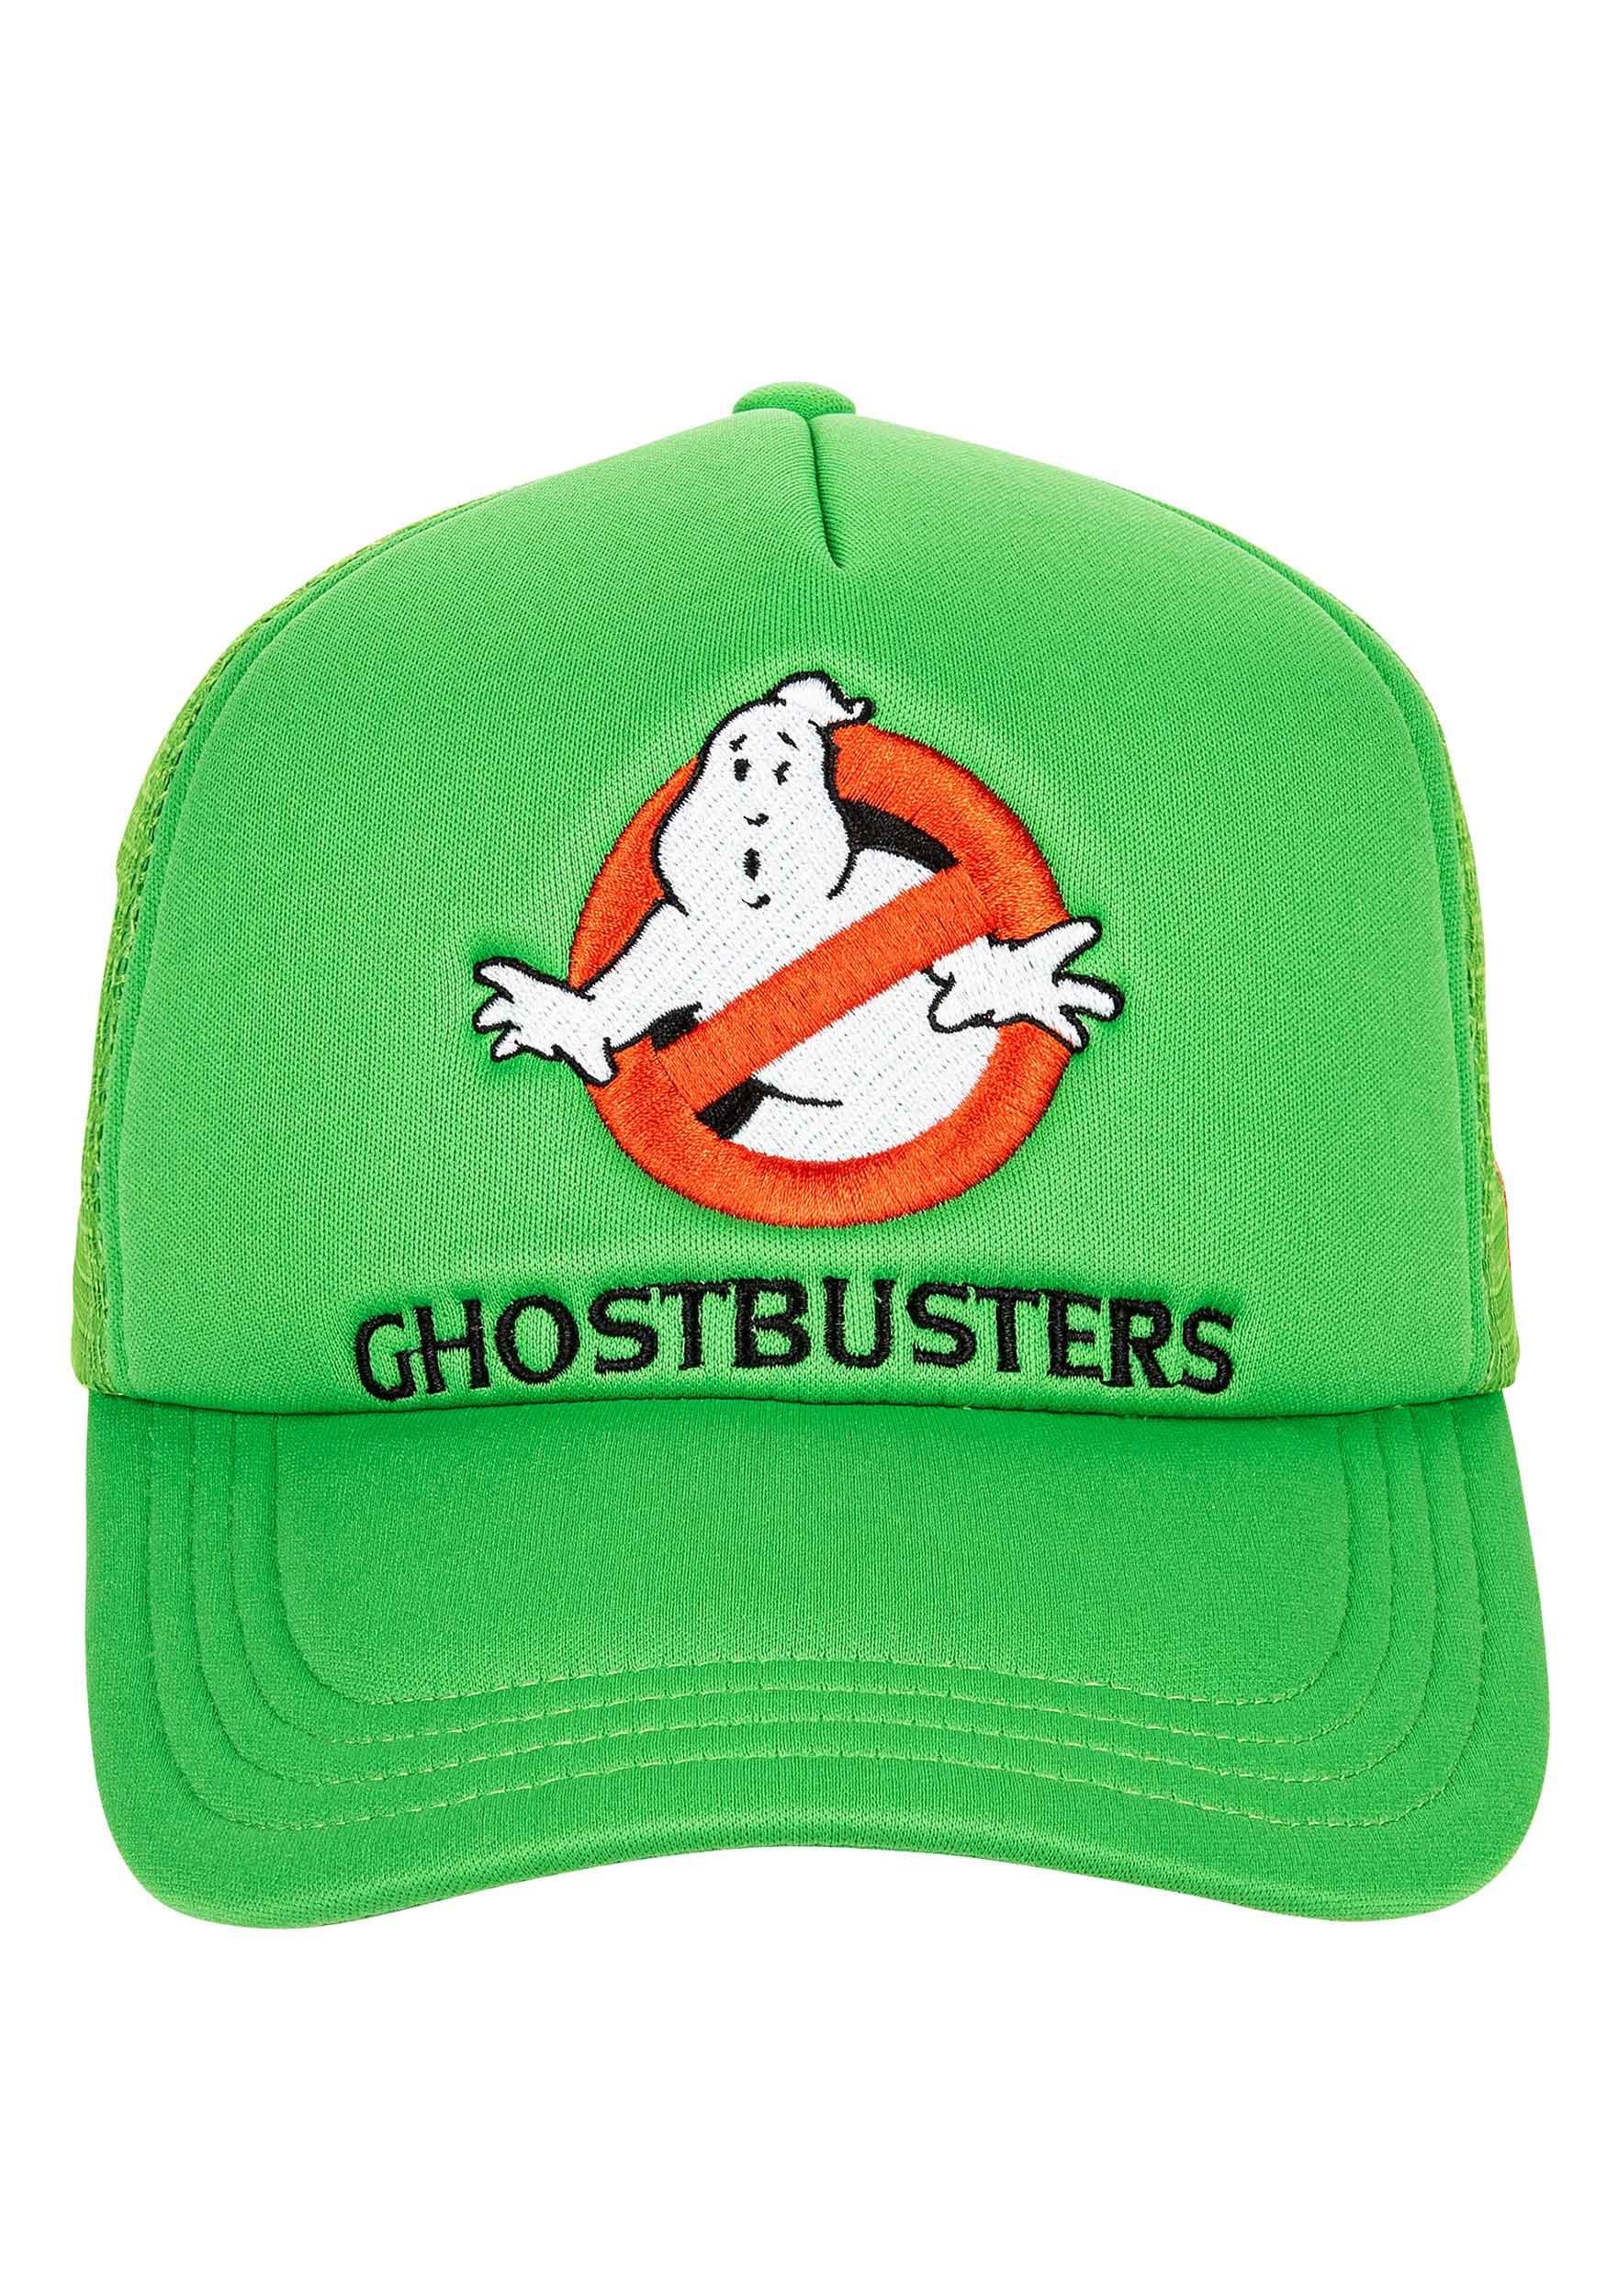 Ghostbusters Slime Green Trucker Hat